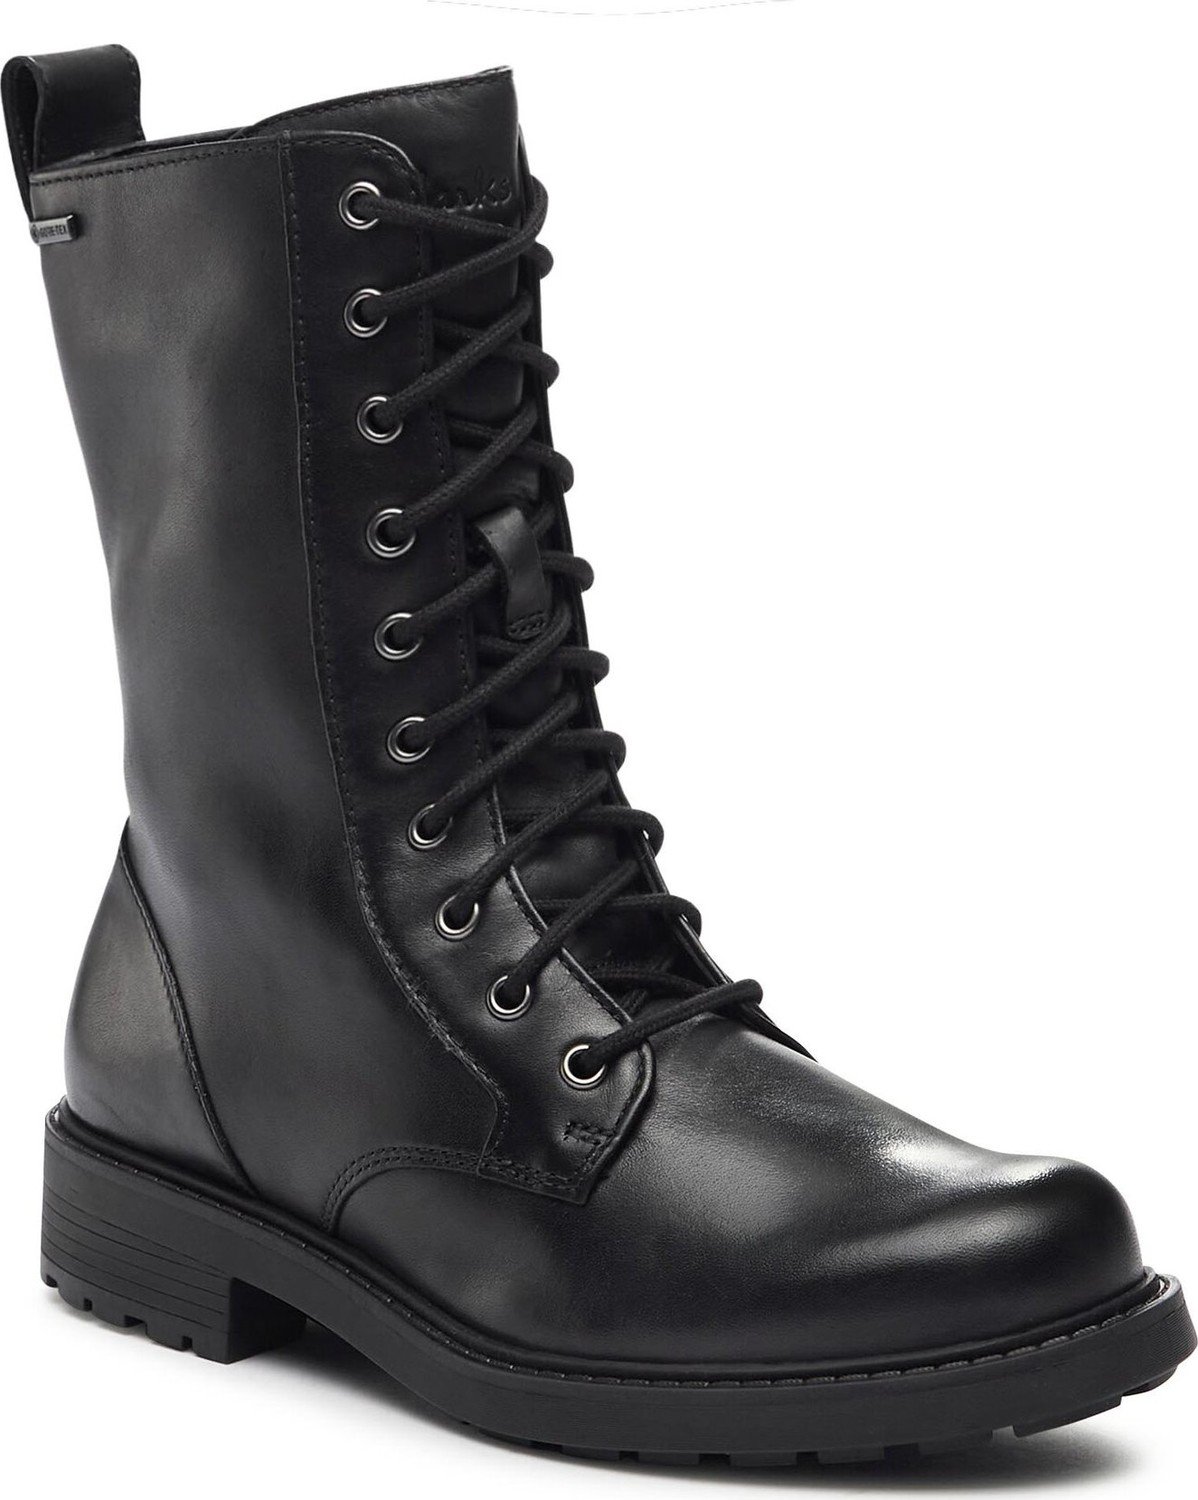 Turistická obuv Clarks Orinoco2 Sty GTX GORE-TEX Black Leather